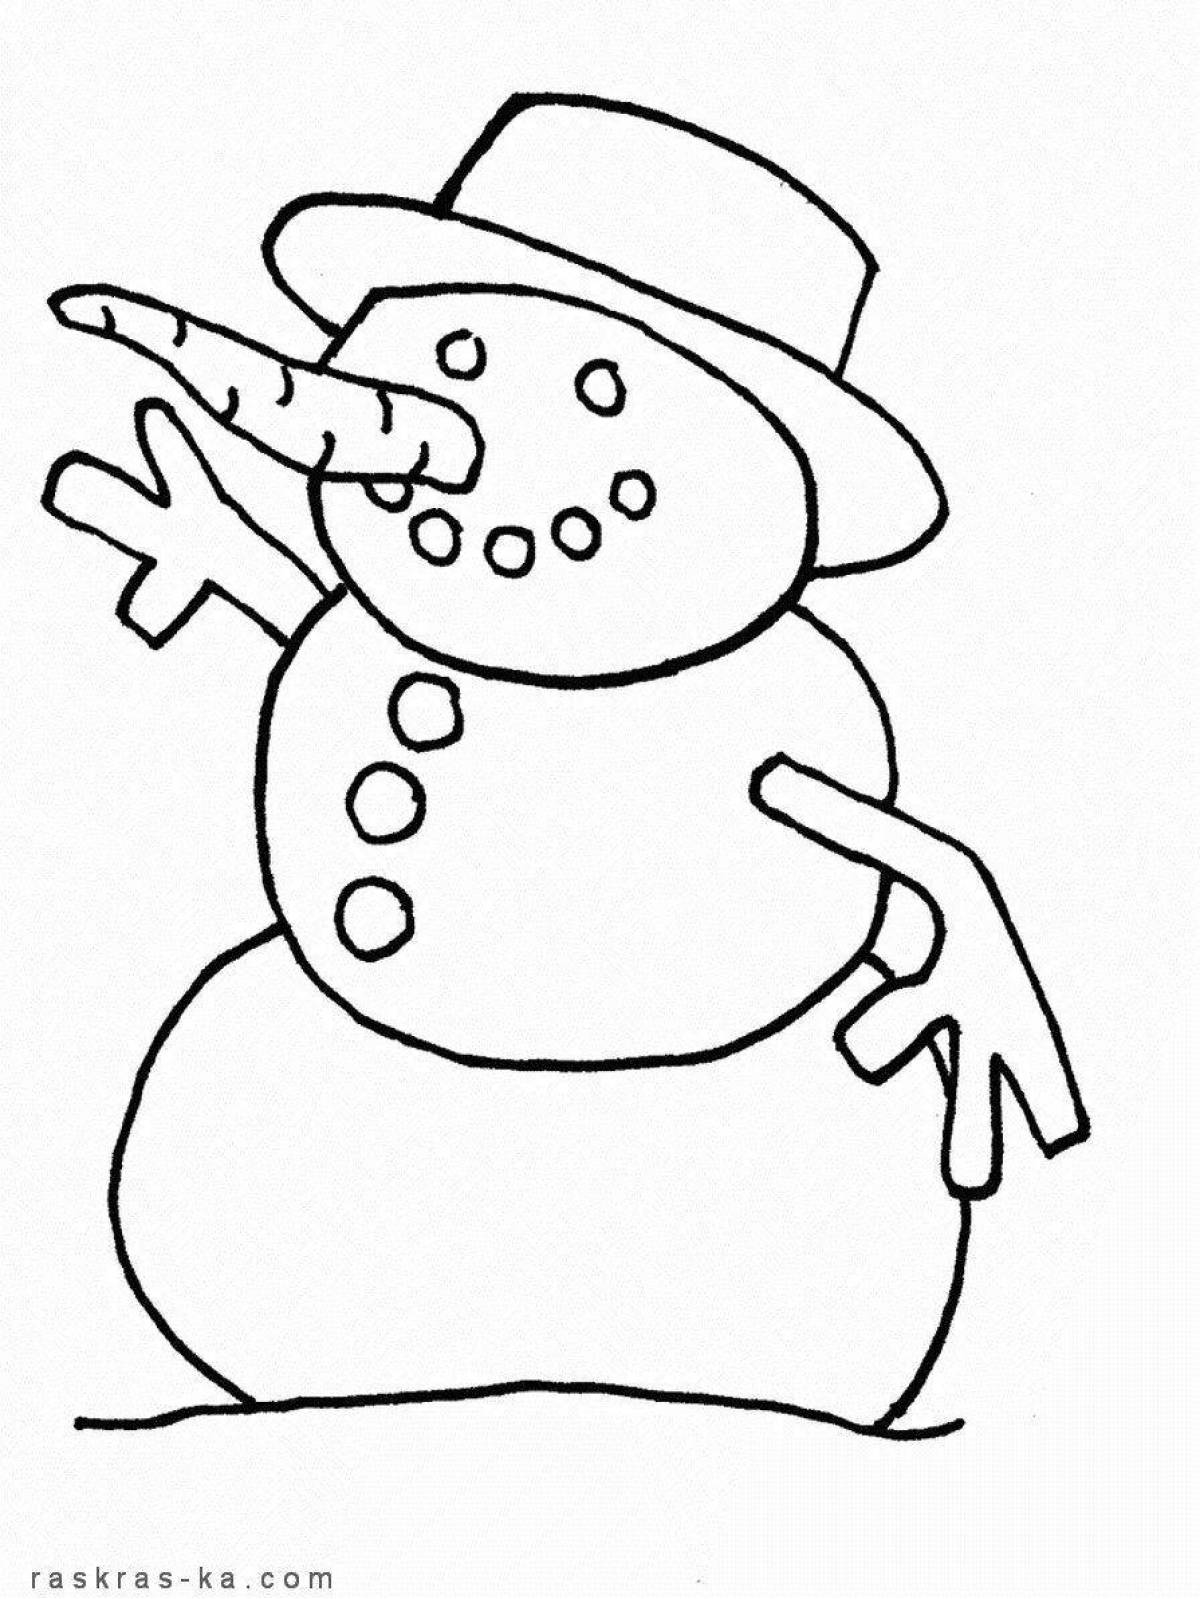 Трафарет снеговика для детей